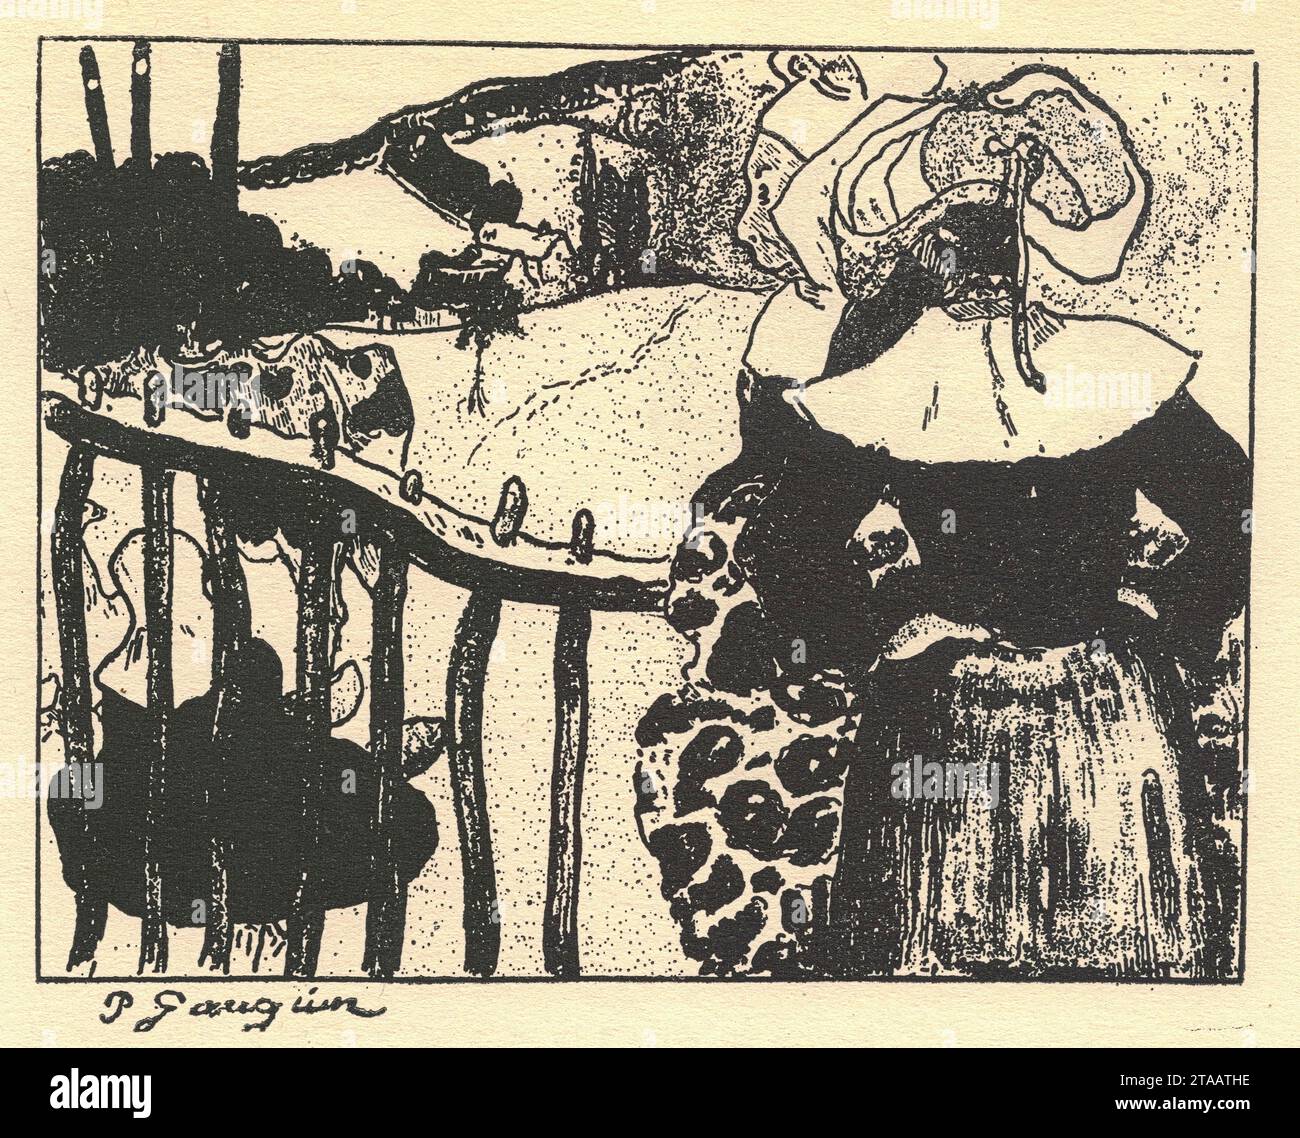 Litografia "Breton Women Beside a Fence" di Paul Gauguin, 1889. Eugene Henri Paul Gauguin (Parigi, 7 giugno 1848 – Parigi, 8 maggio 1903) è stato un artista francese. Inapprezzato fino a dopo la sua morte, Gauguin è ora riconosciuto per il suo uso sperimentale del colore e dello stile sintetista che erano distinti dall'Impressionismo. Verso la fine della sua vita, trascorse dieci anni nella Polinesia francese. I dipinti di questo tempo raffigurano persone o paesaggi di quella regione. Il suo lavoro fu influente sull'avanguardia francese e su molti artisti moderni, come Pablo Picasso e Henri Matisse, ed è ben noto per questo Foto Stock